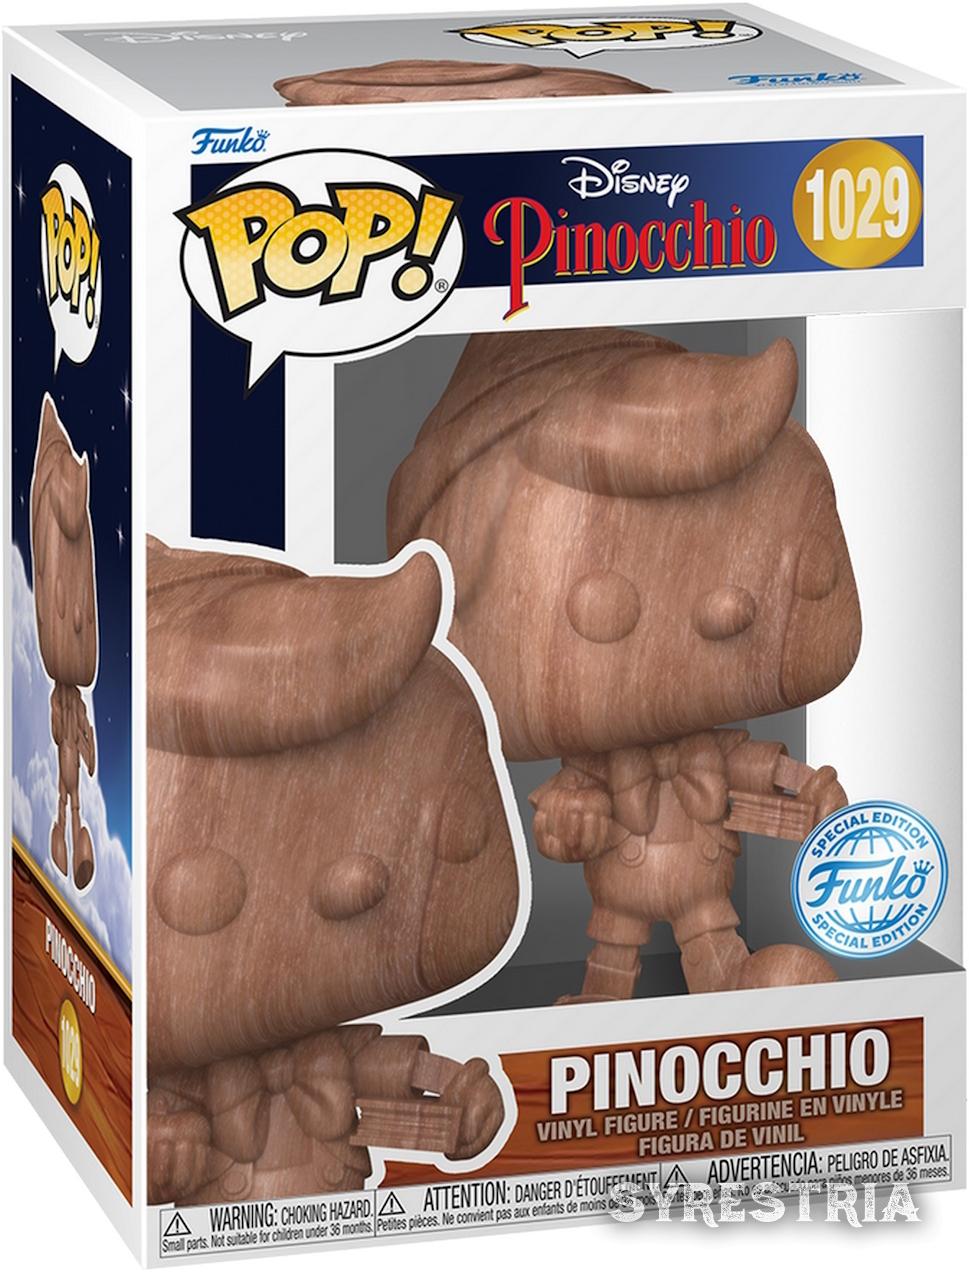 Disney Pinocchio - Pinocchio 1029 Special Edition - Funko Pop! Vinyl Figur